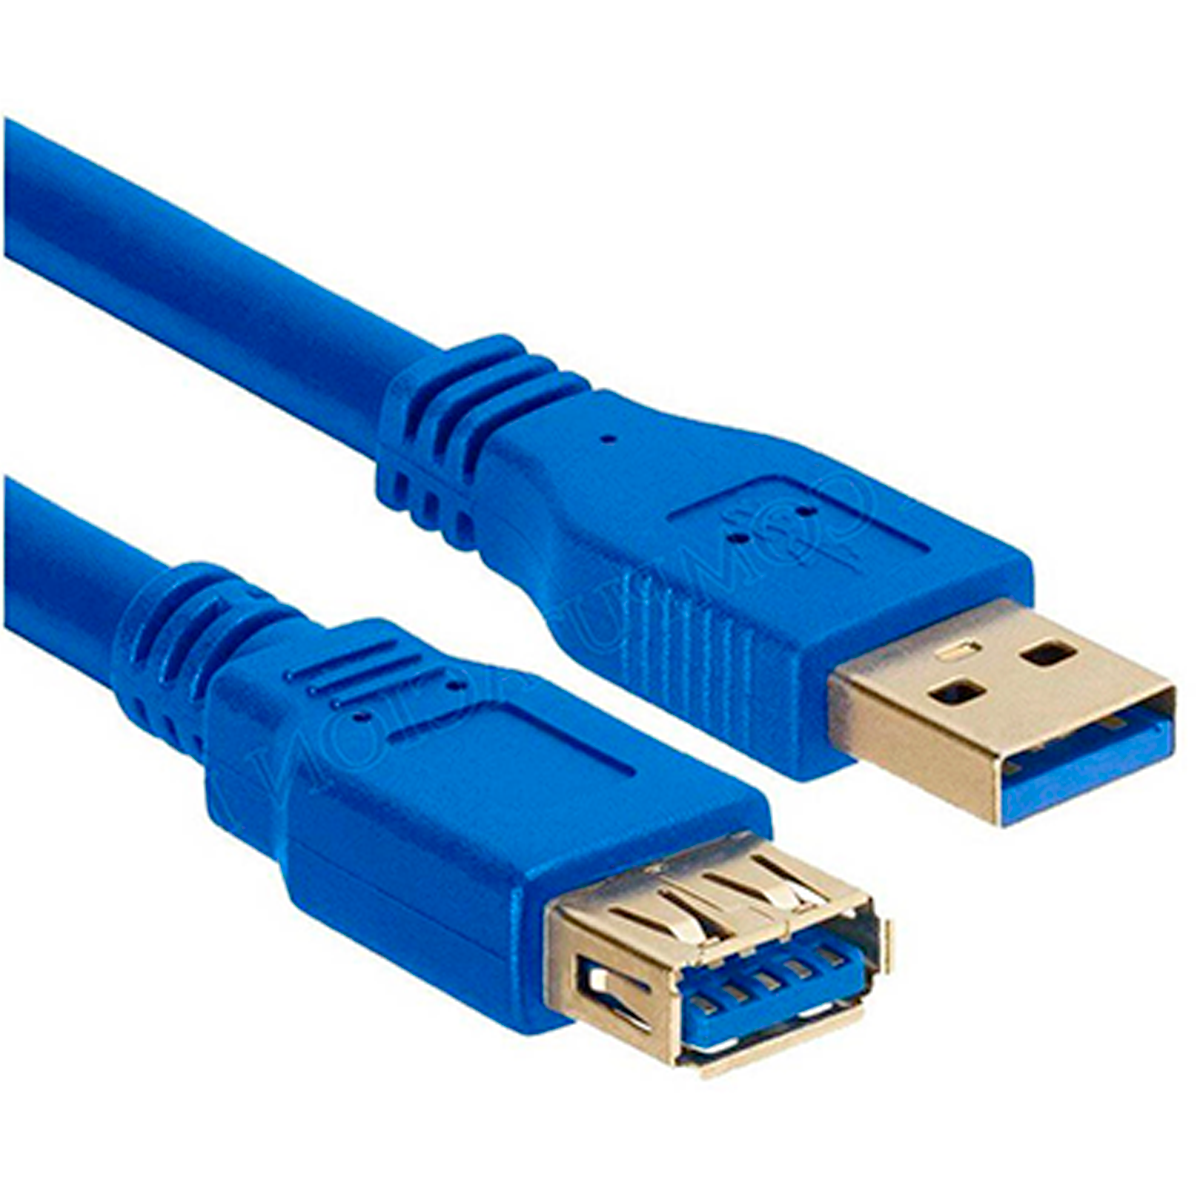 Cable Extensión USB Exelink de 5 metros (Macho a Hembra, Azul)